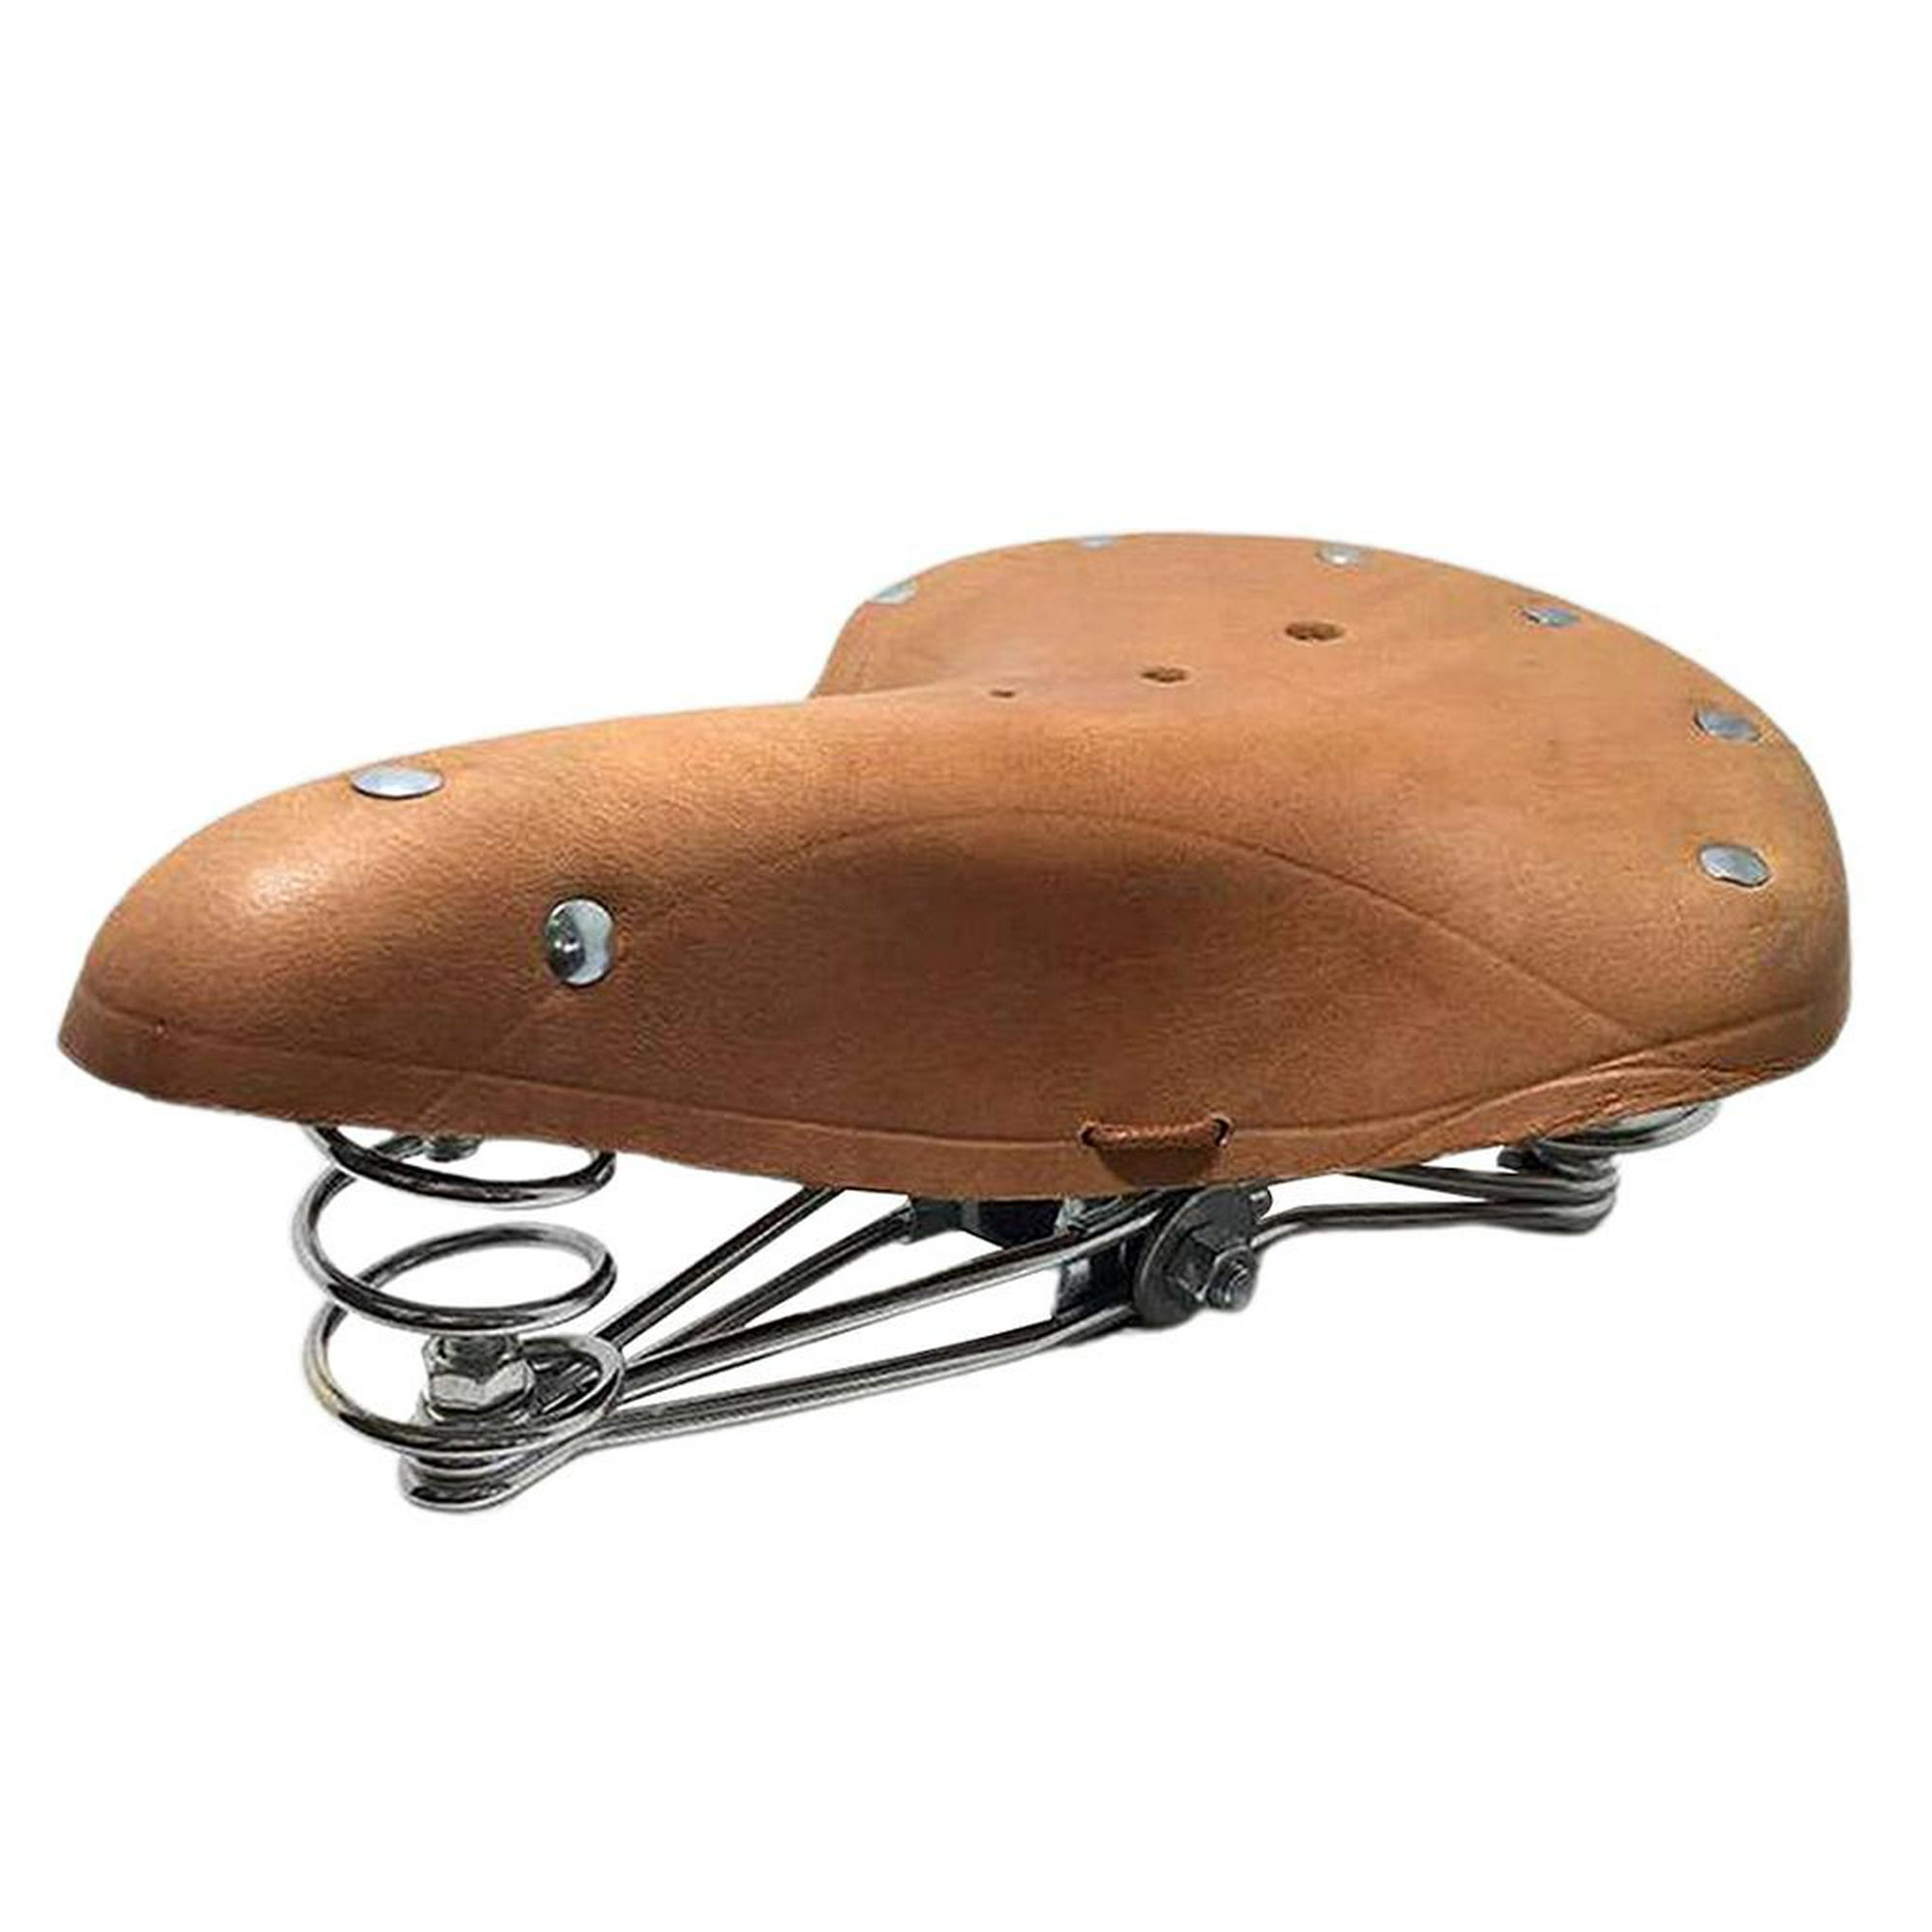 Sillín de bicicleta de carretera retro Unisex asiento de bicicleta clásico  asiento cómodo con resortes amortiguadores cuero de vaca silla de bicicleta